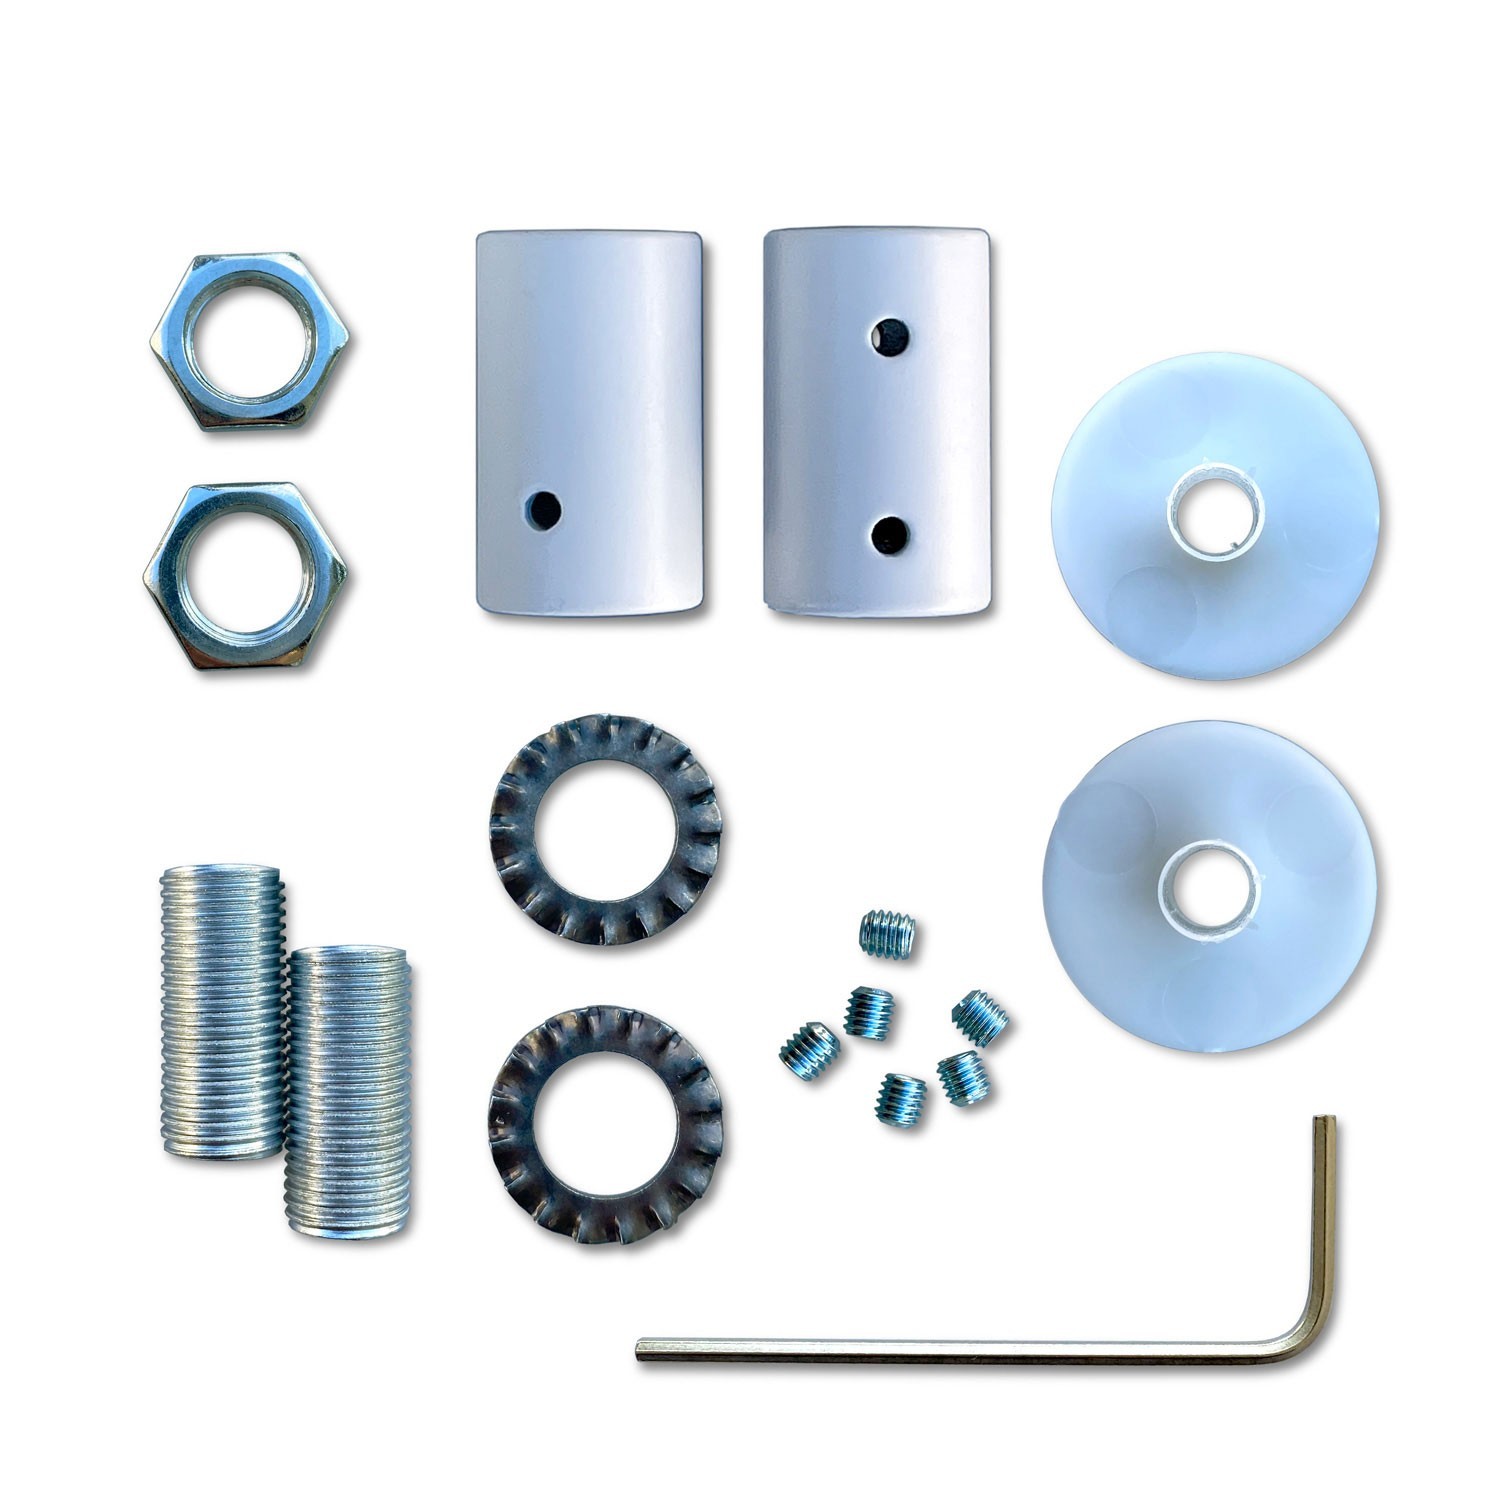 Kit Creative Flex fleksibelt rør i petroleumsblå RM78 tekstilforing med metalterminaler